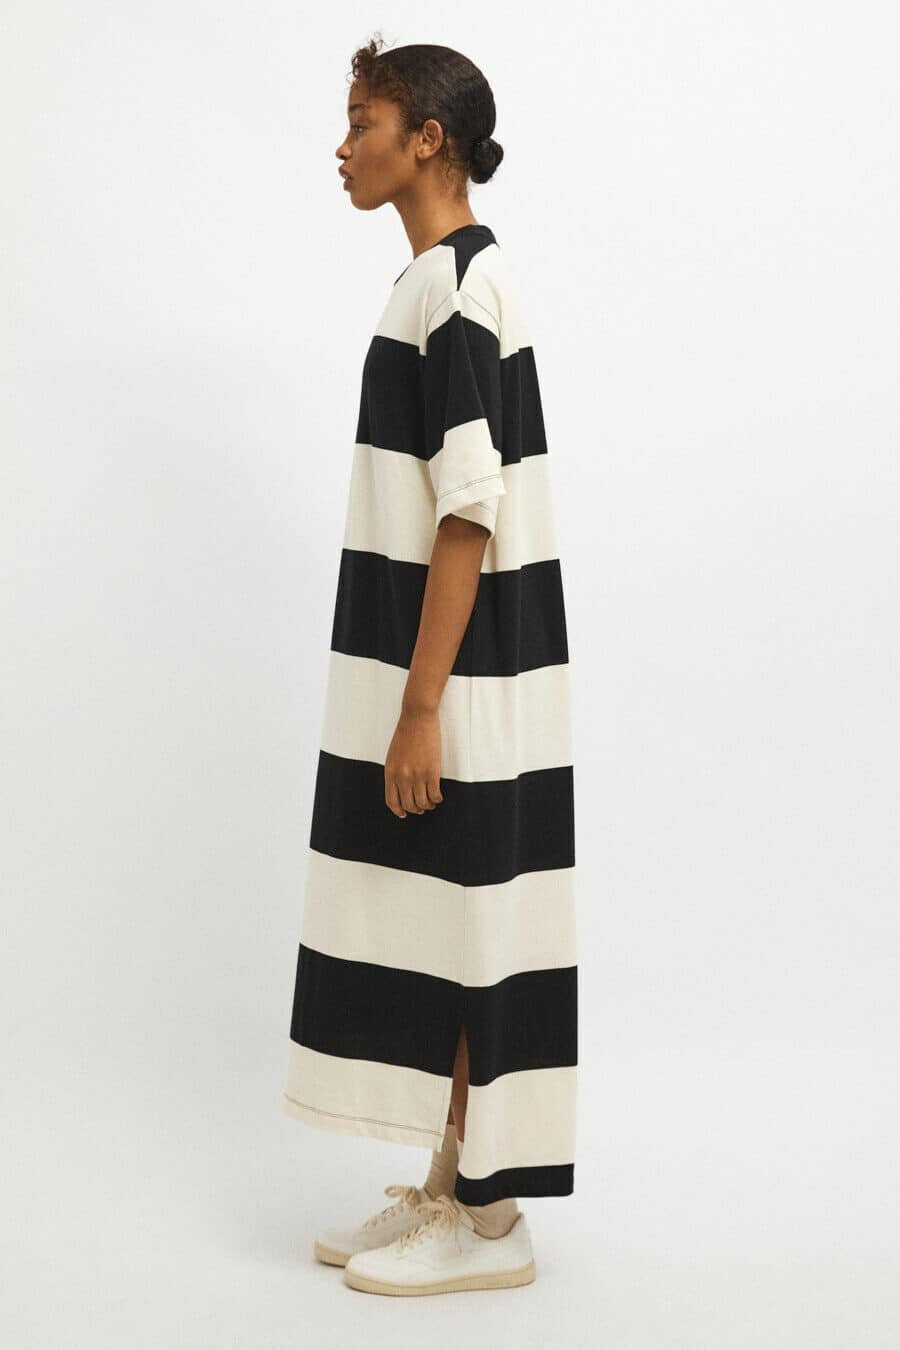 RITA ROW - Olimpia Dress - Black White Stripes 2